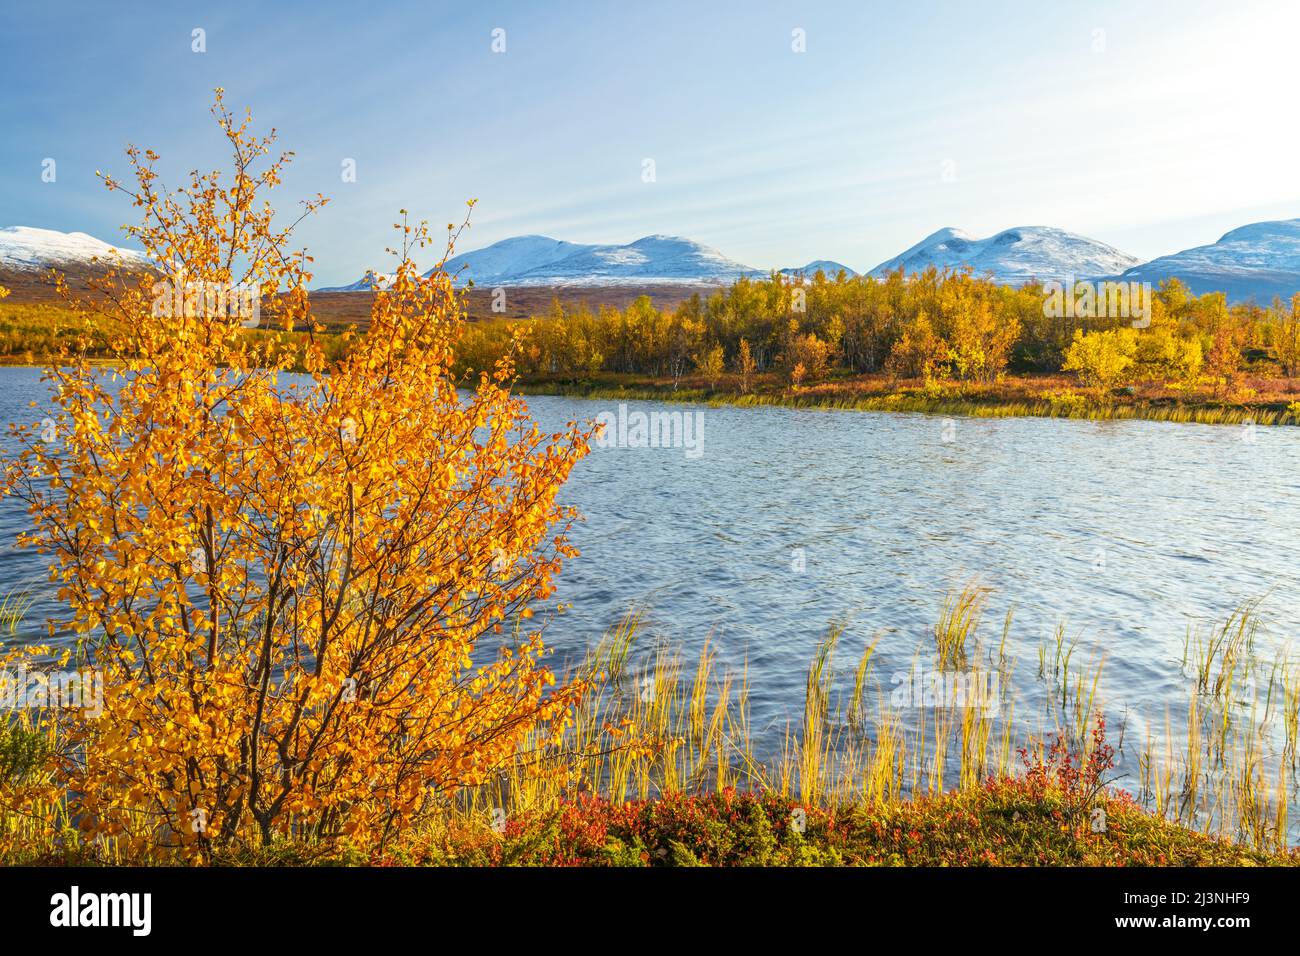 Njakajaure avec Lapporten en arrière-plan en septembre avec des couleurs d'automne et de la neige sur la montagne, parc national Abisko, Laponie suédoise, Suède Banque D'Images